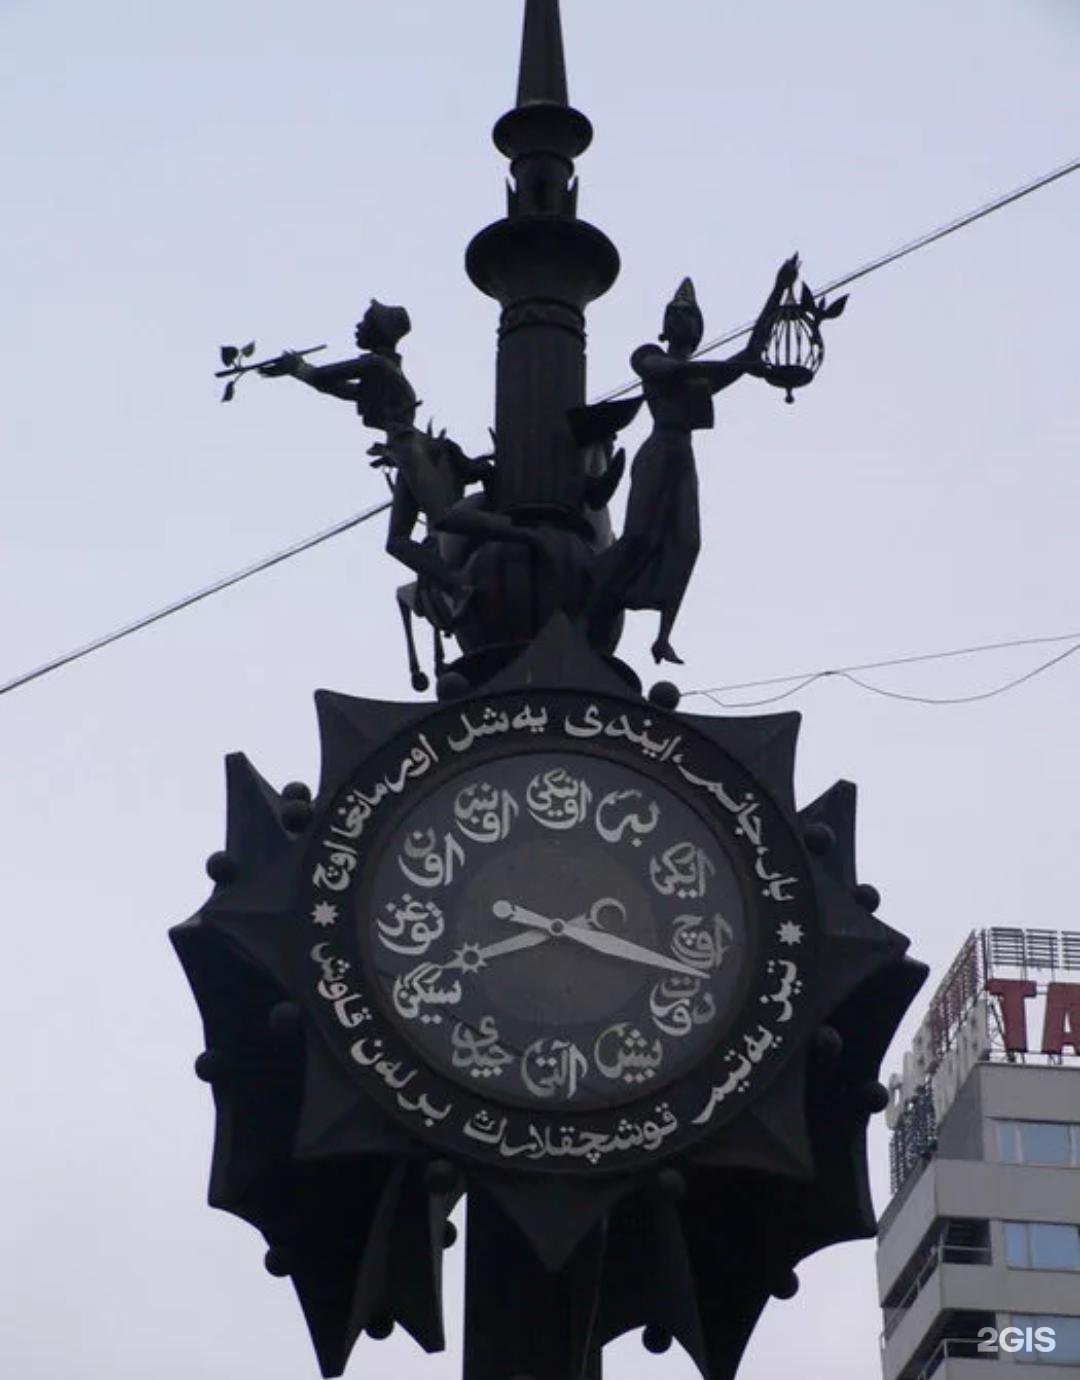 Часы на улице Баумана